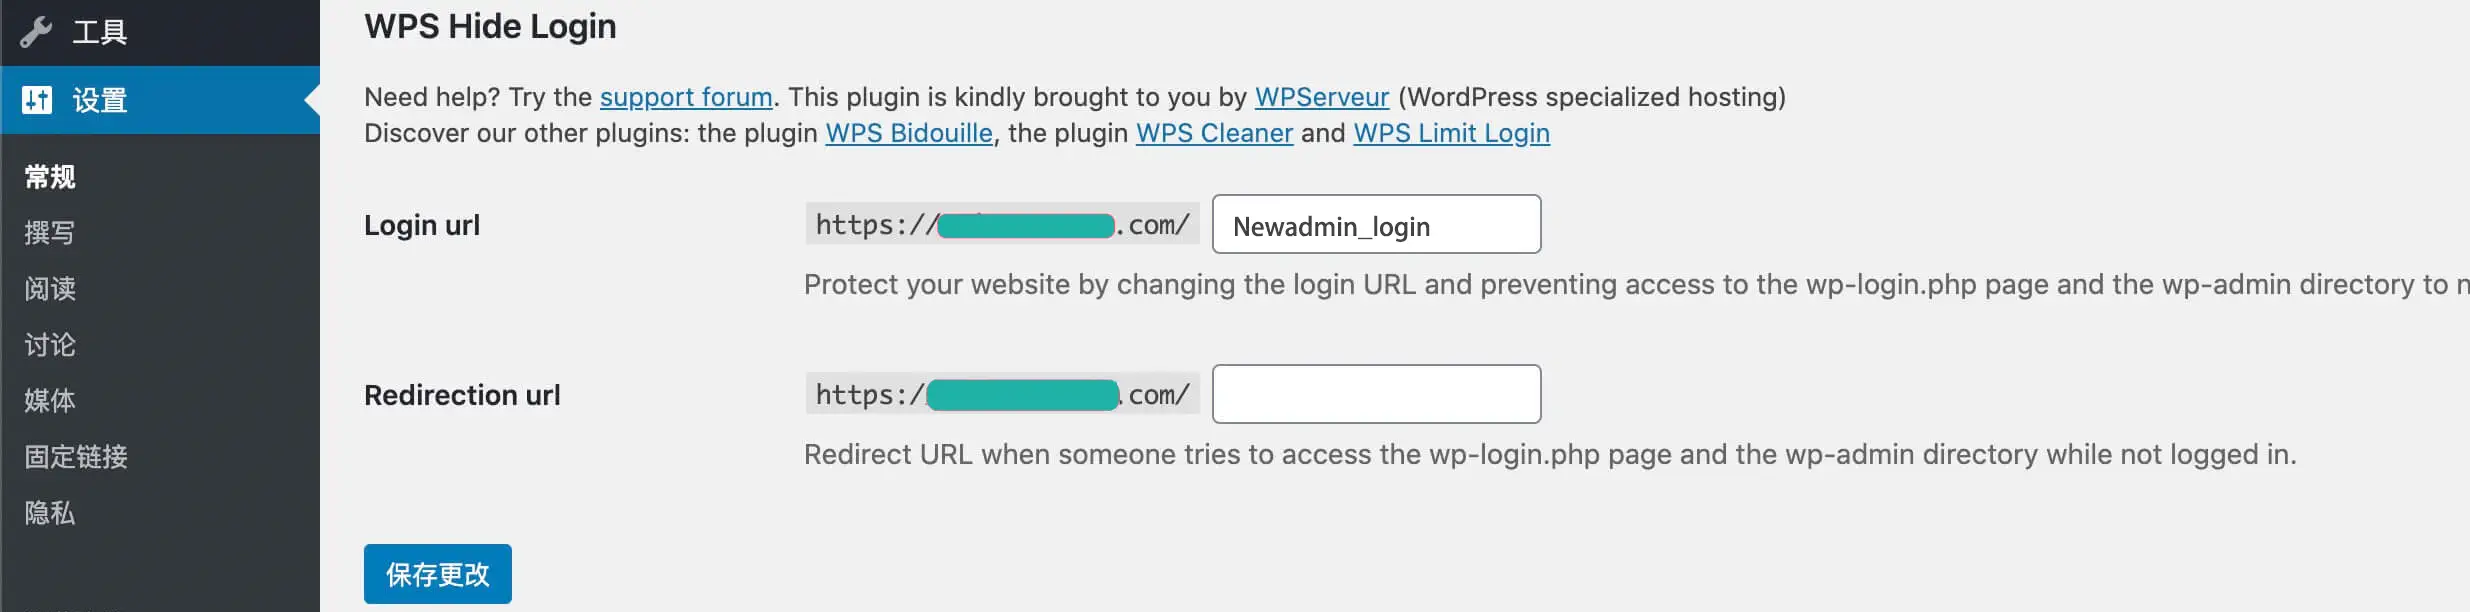 wps hide login---wordpress后台登录地址修改插件